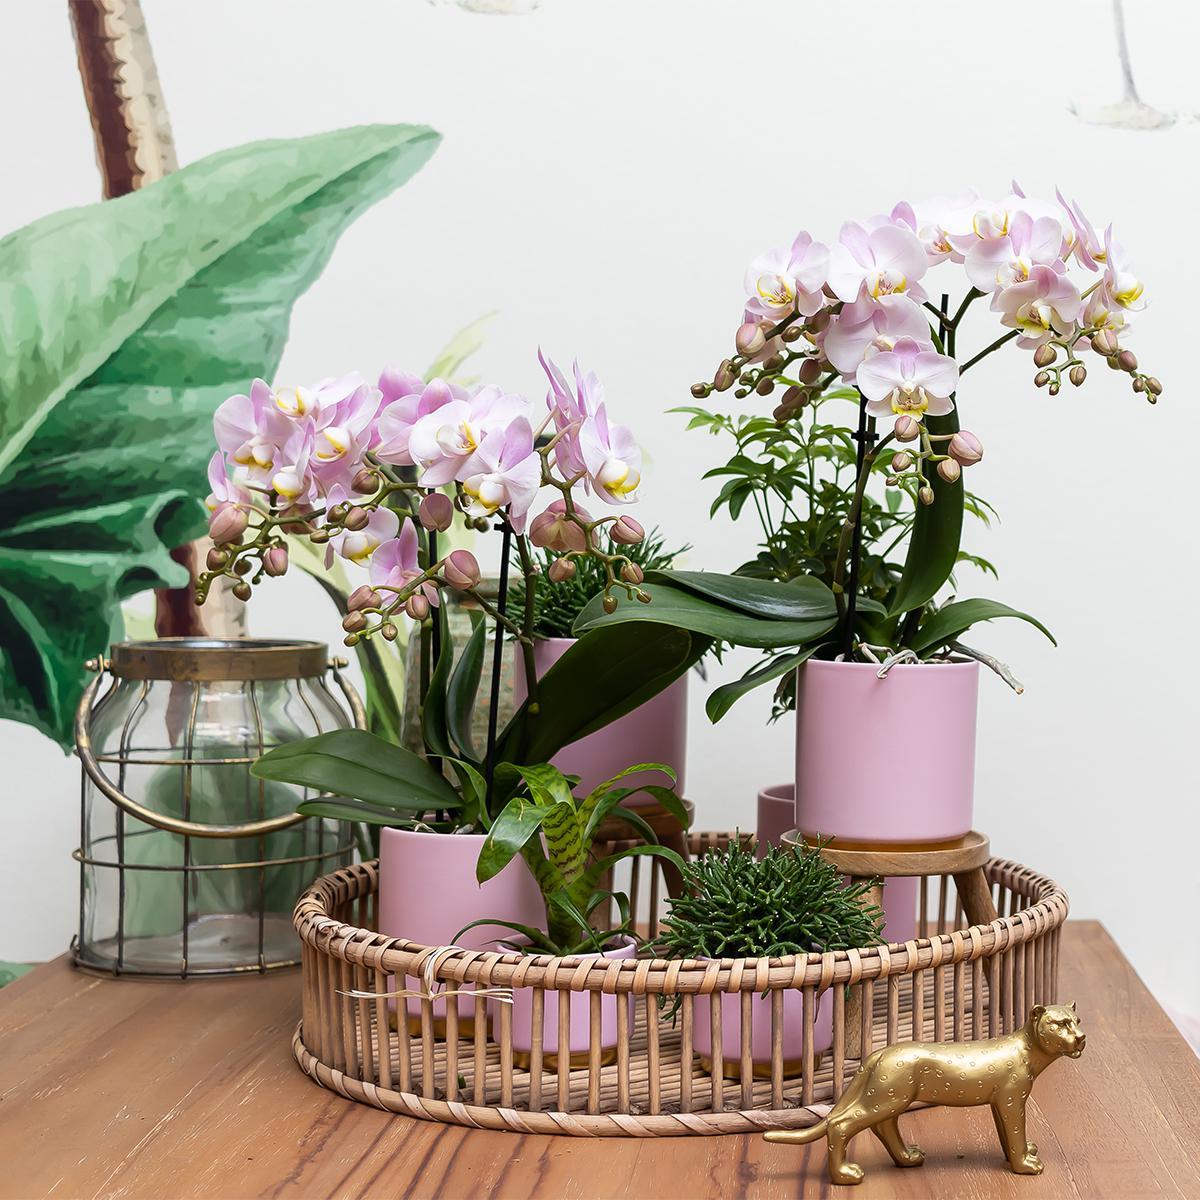 Kolibri Home | Gold foot pink bloempot - Roze keramieken sierpot met gouden rand Ø9cm